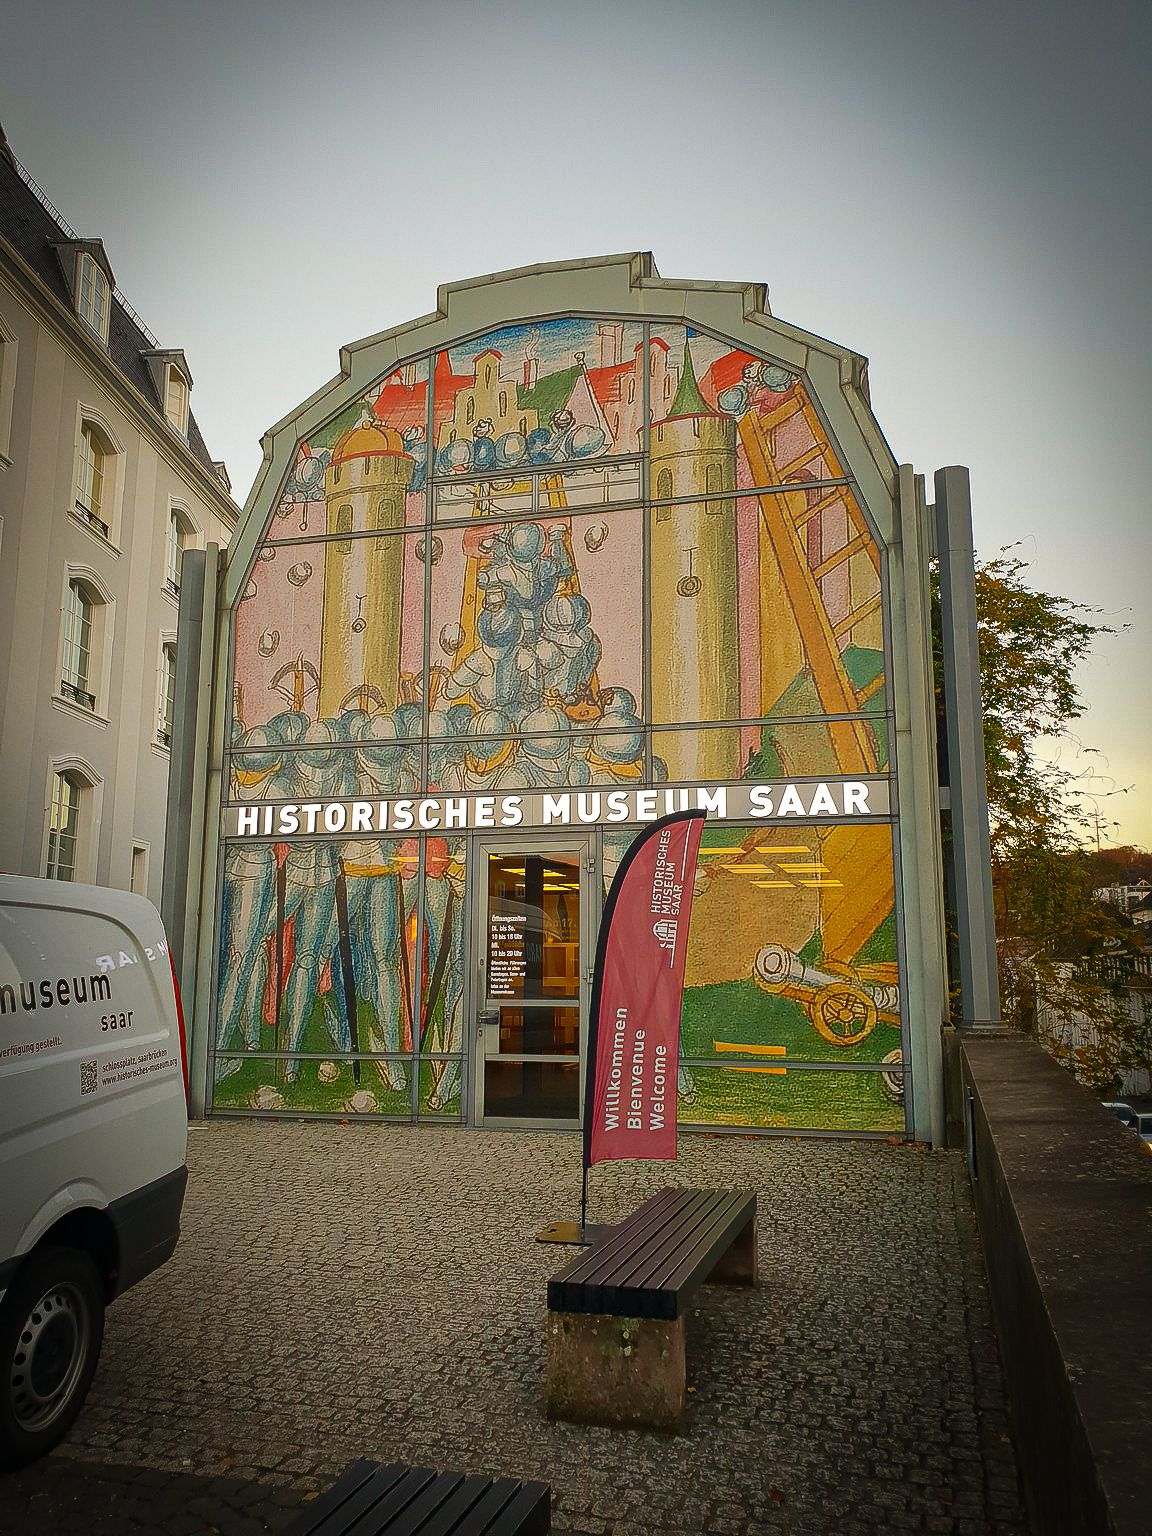 MAROTTA WERBUNG - Fassadenbeklebung für "Historisches Museum Saar" in Saarbrücken